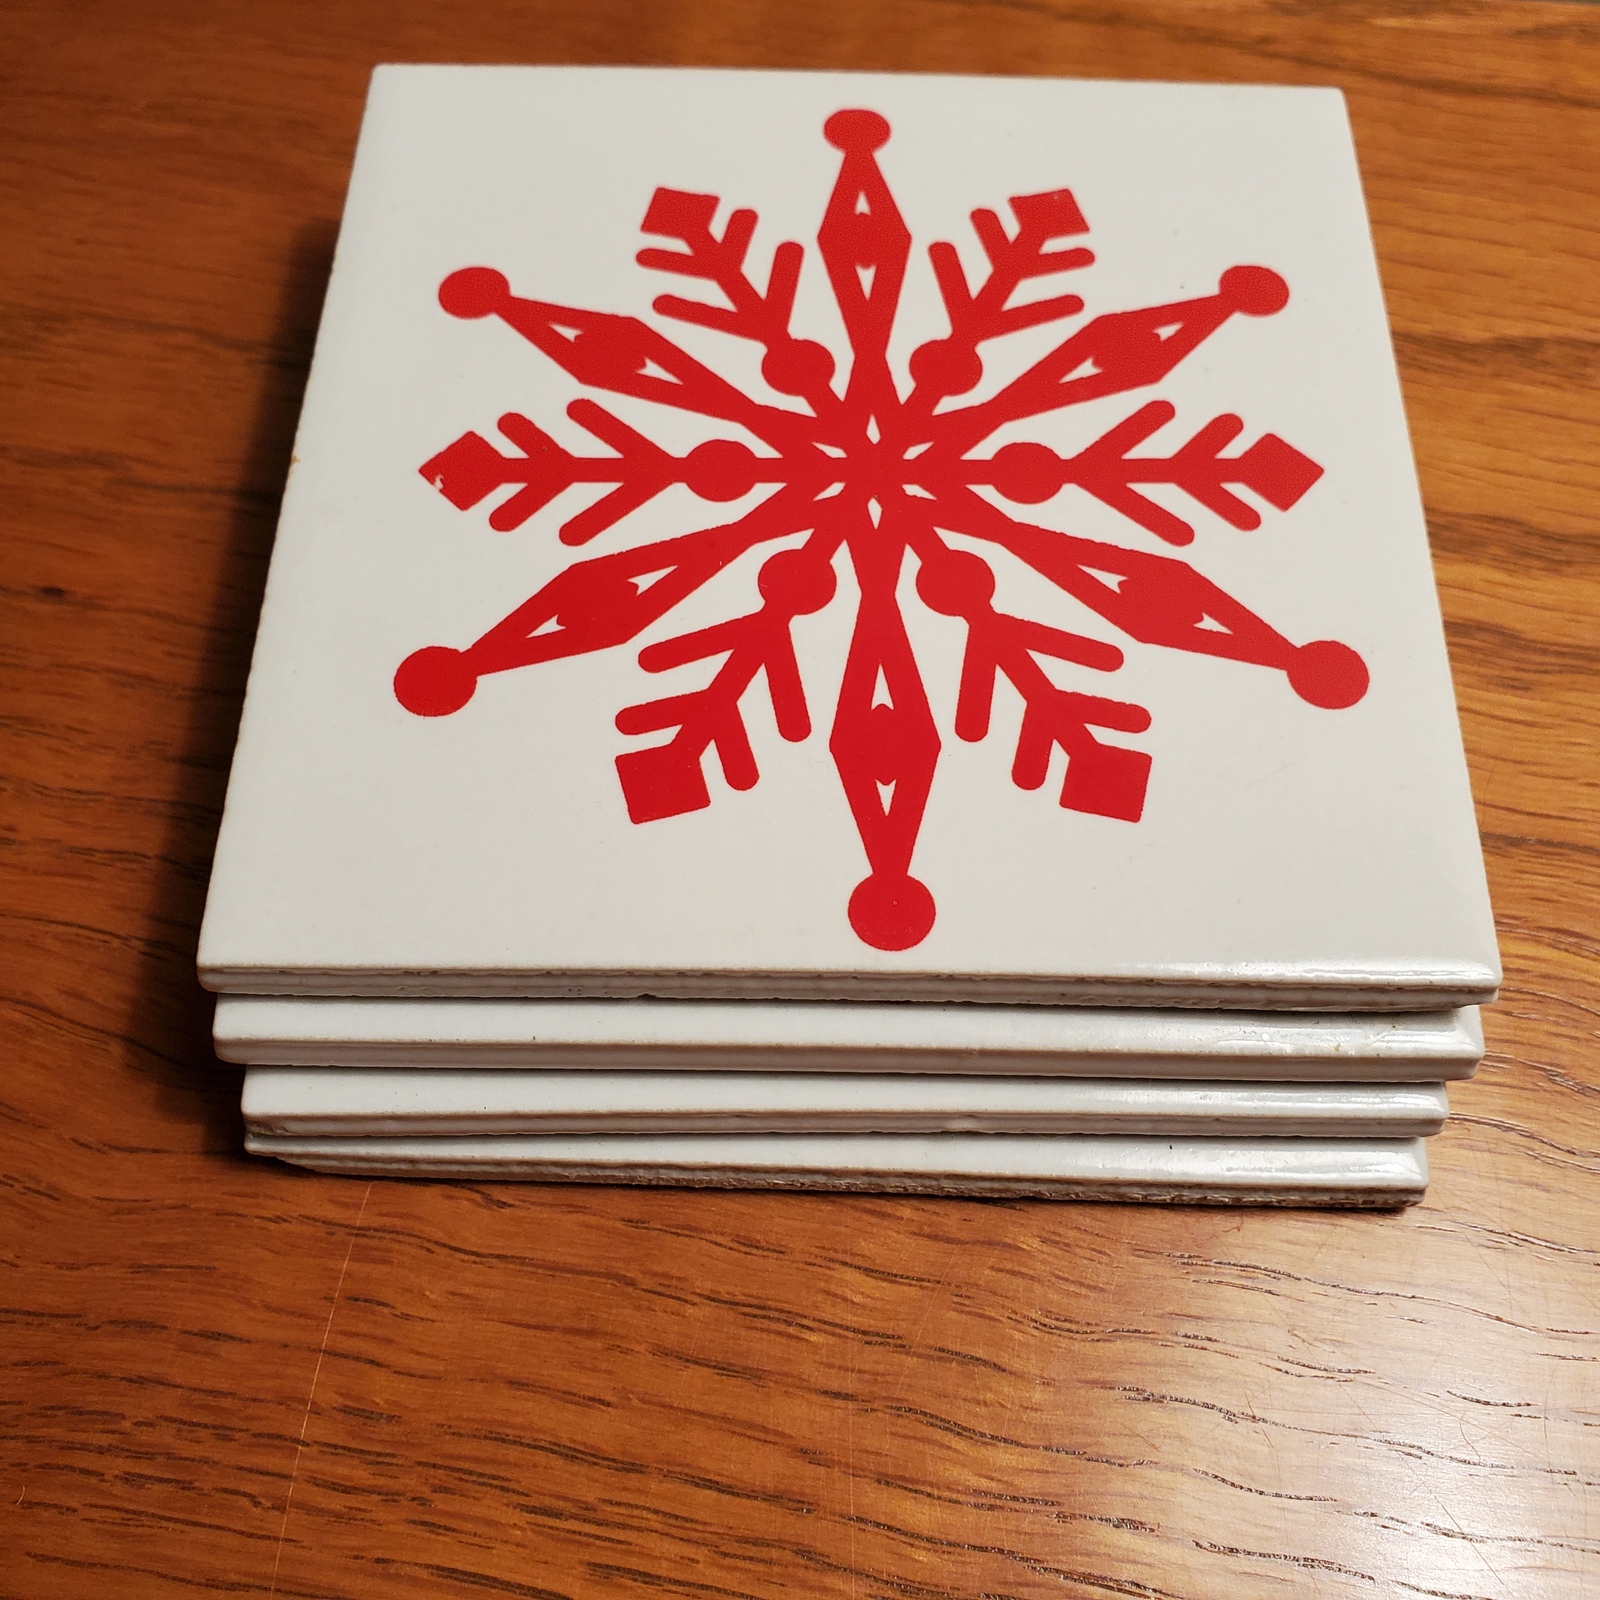 Coasters, set of 4, Red Snowflake on White, Glazed ceramic, cork backing - $13.99